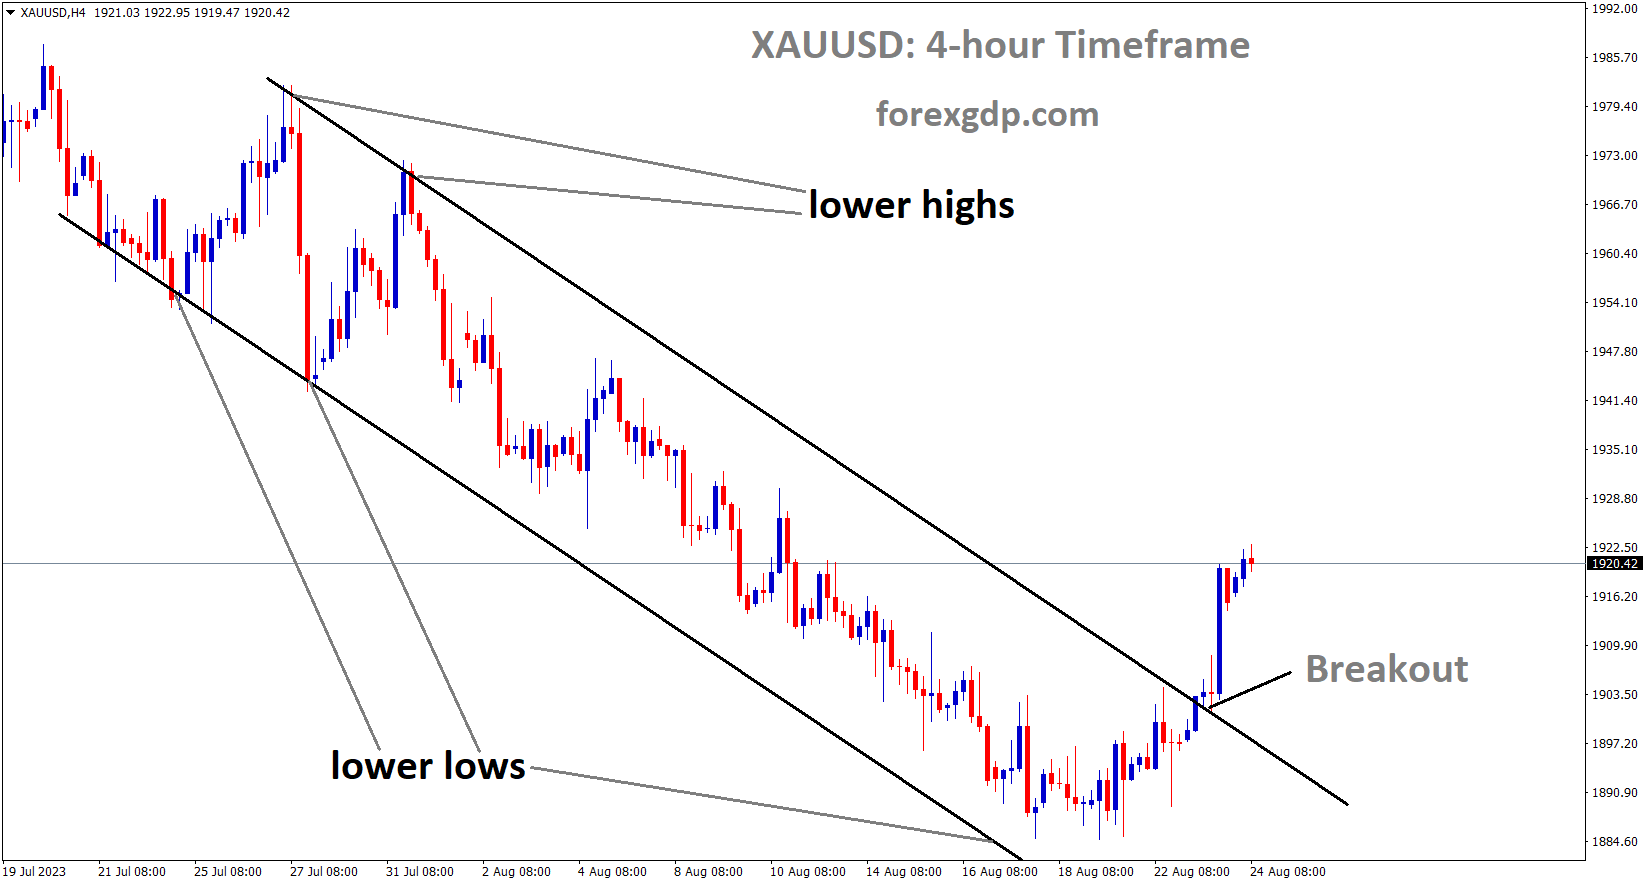 XAUUSD Gold price has broken the Descending channel in upside